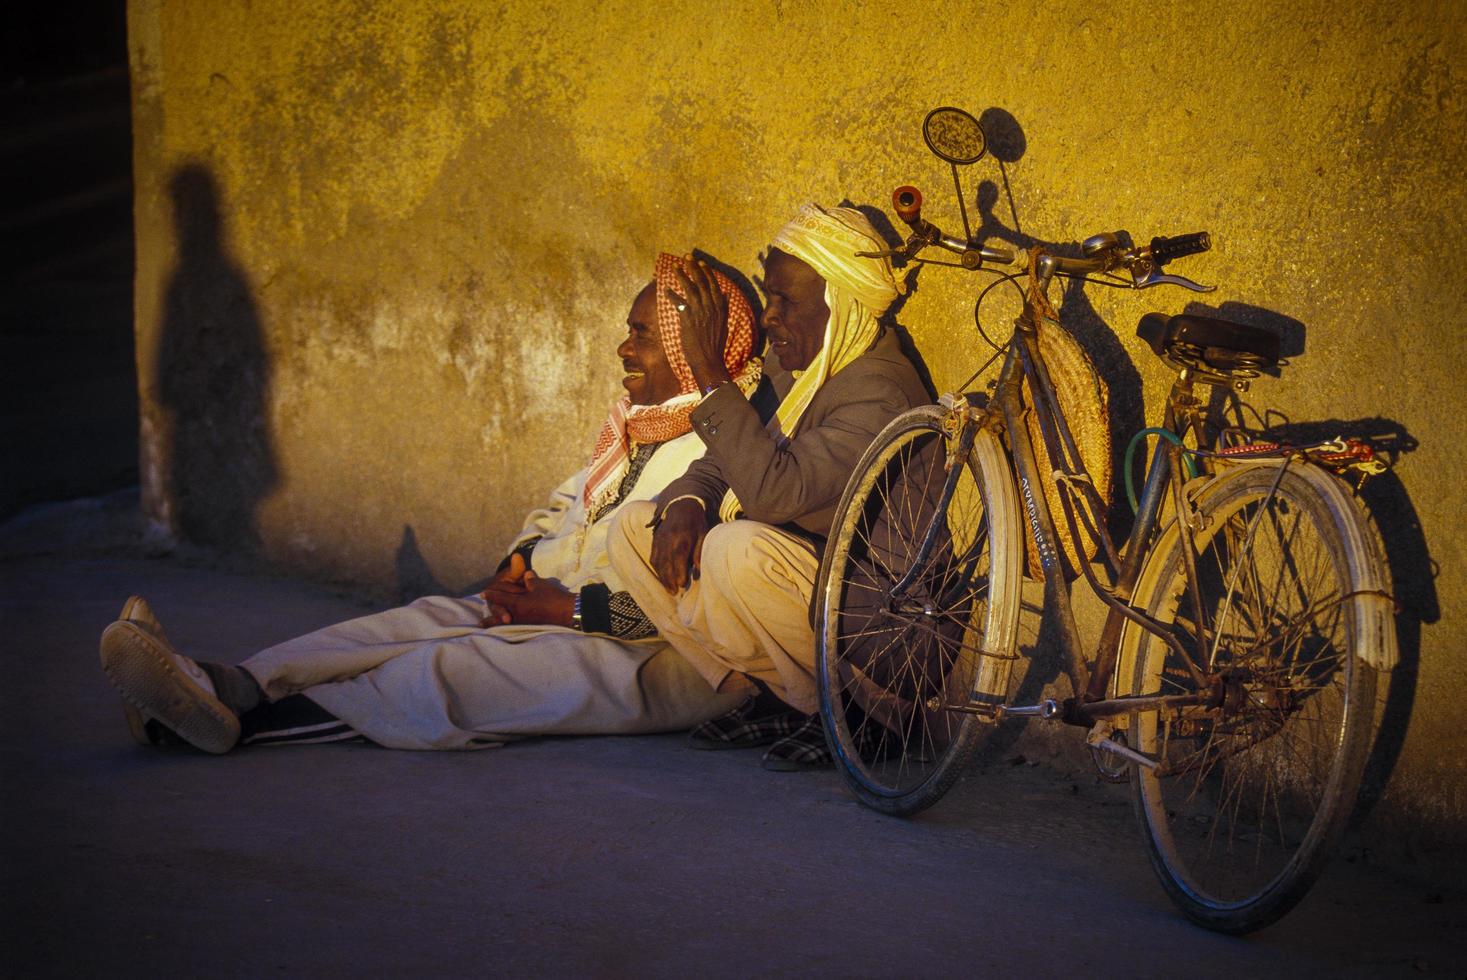 tamanrasset, algerije 2010- onbekende persoon zit met zijn fiets foto